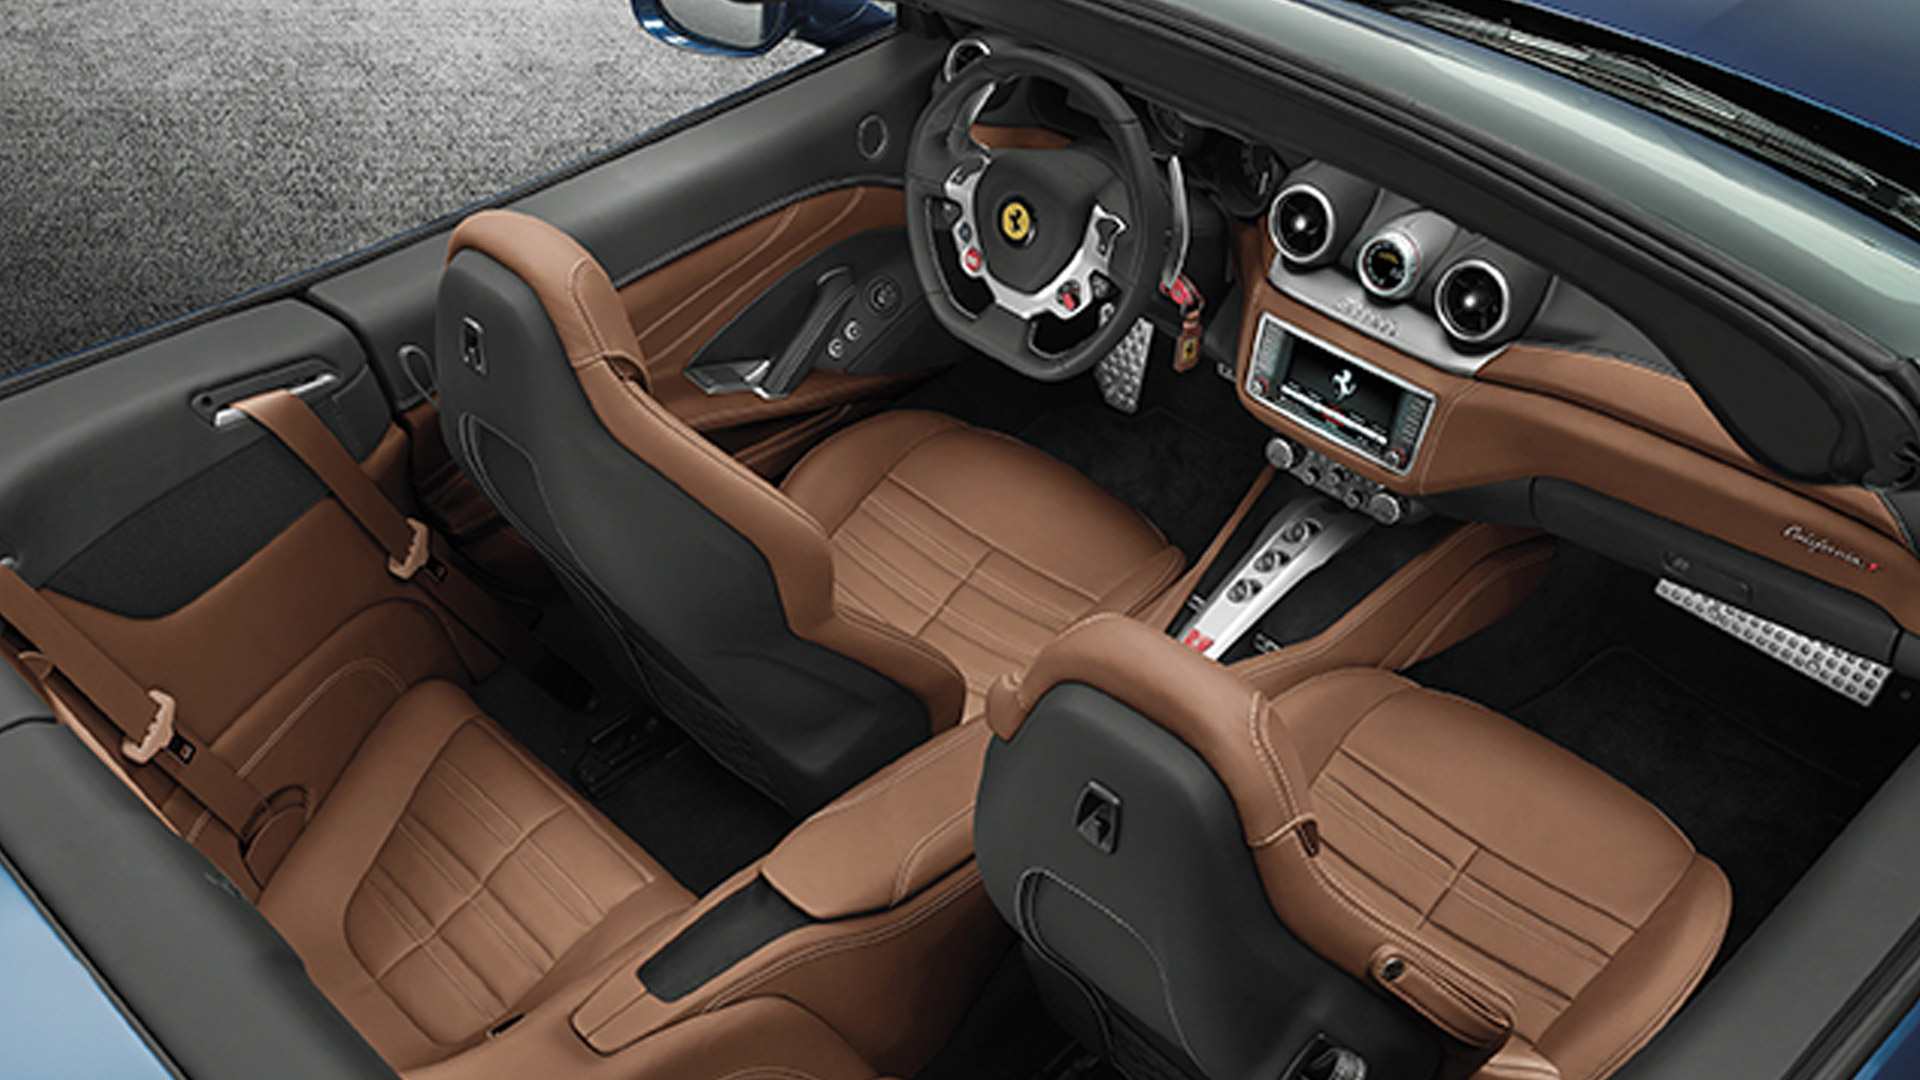 Ferrari California T 2015 STD Interior